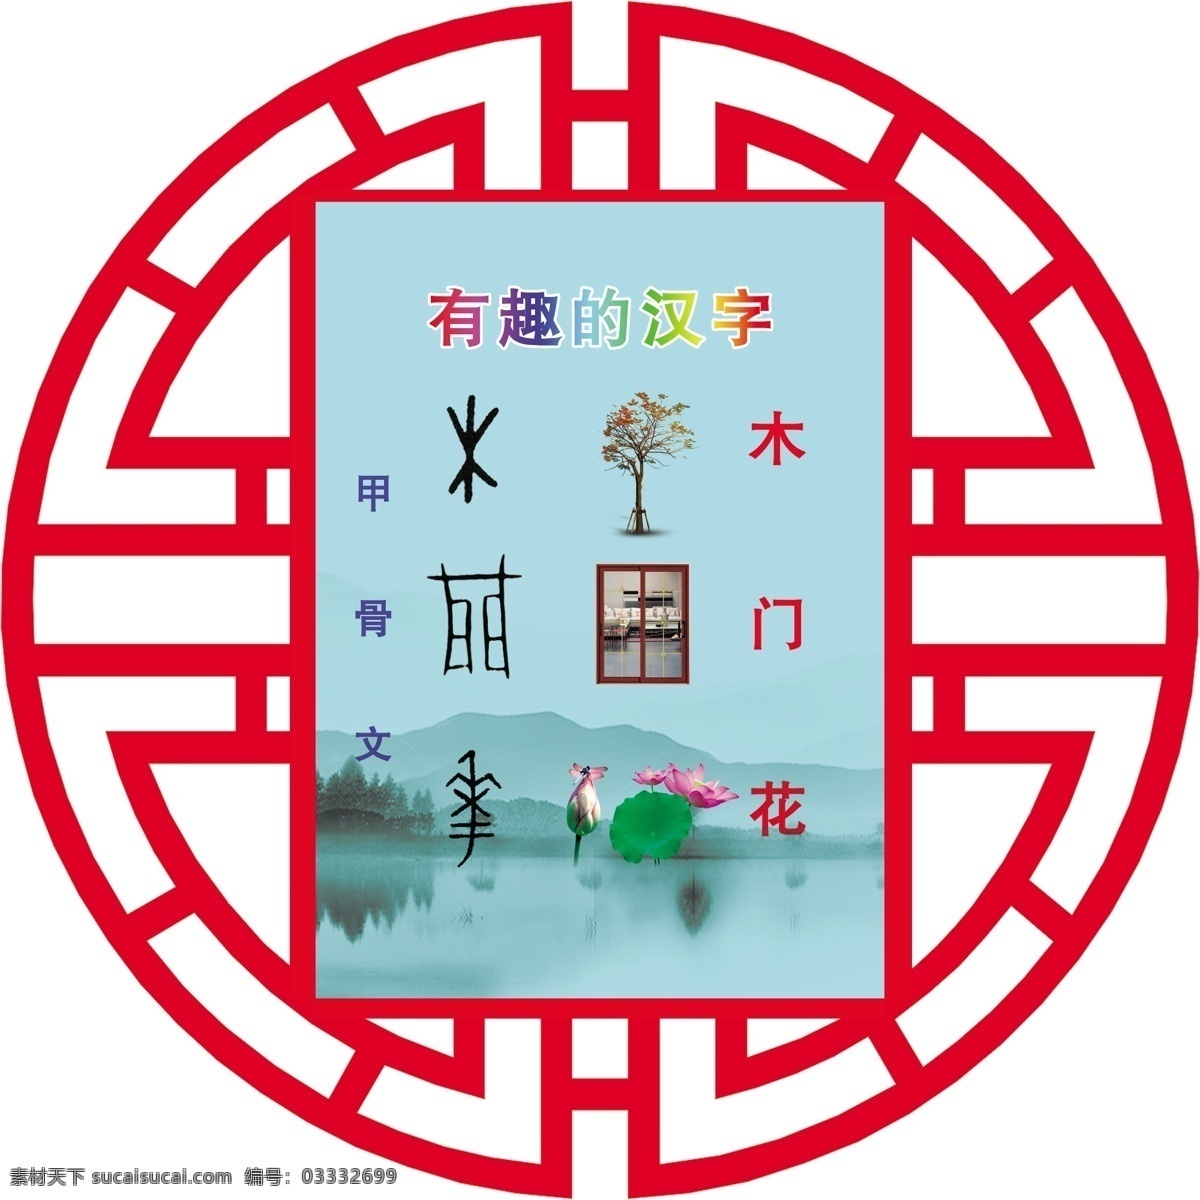 象形字 镂空边 有趣的汉字 水墨画 山水